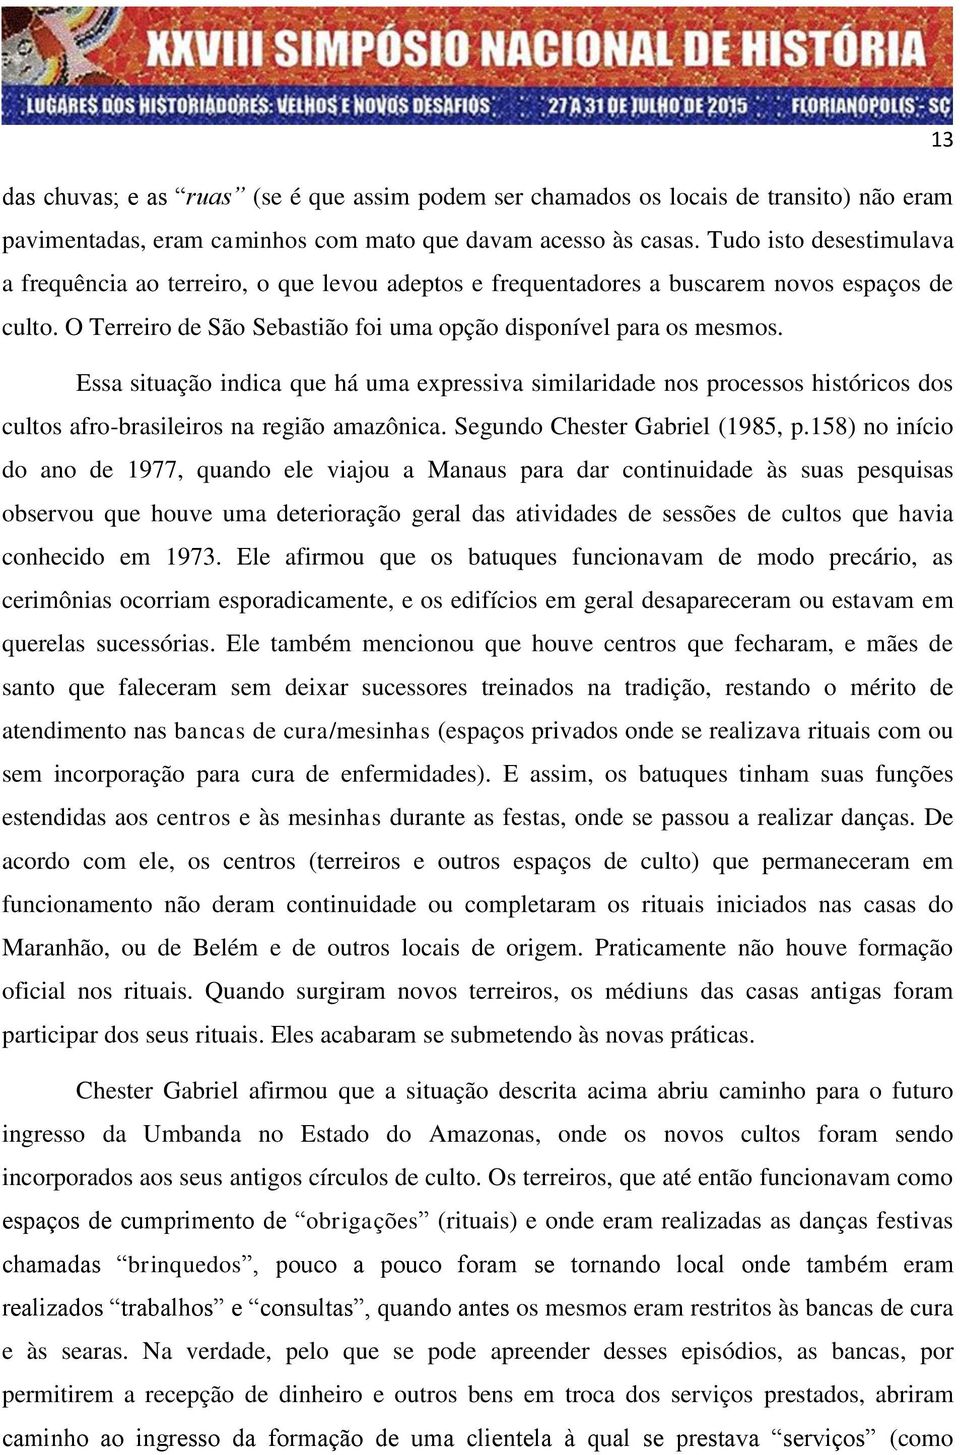 Essa situação indica que há uma expressiva similaridade nos processos históricos dos cultos afro-brasileiros na região amazônica. Segundo Chester Gabriel (1985, p.